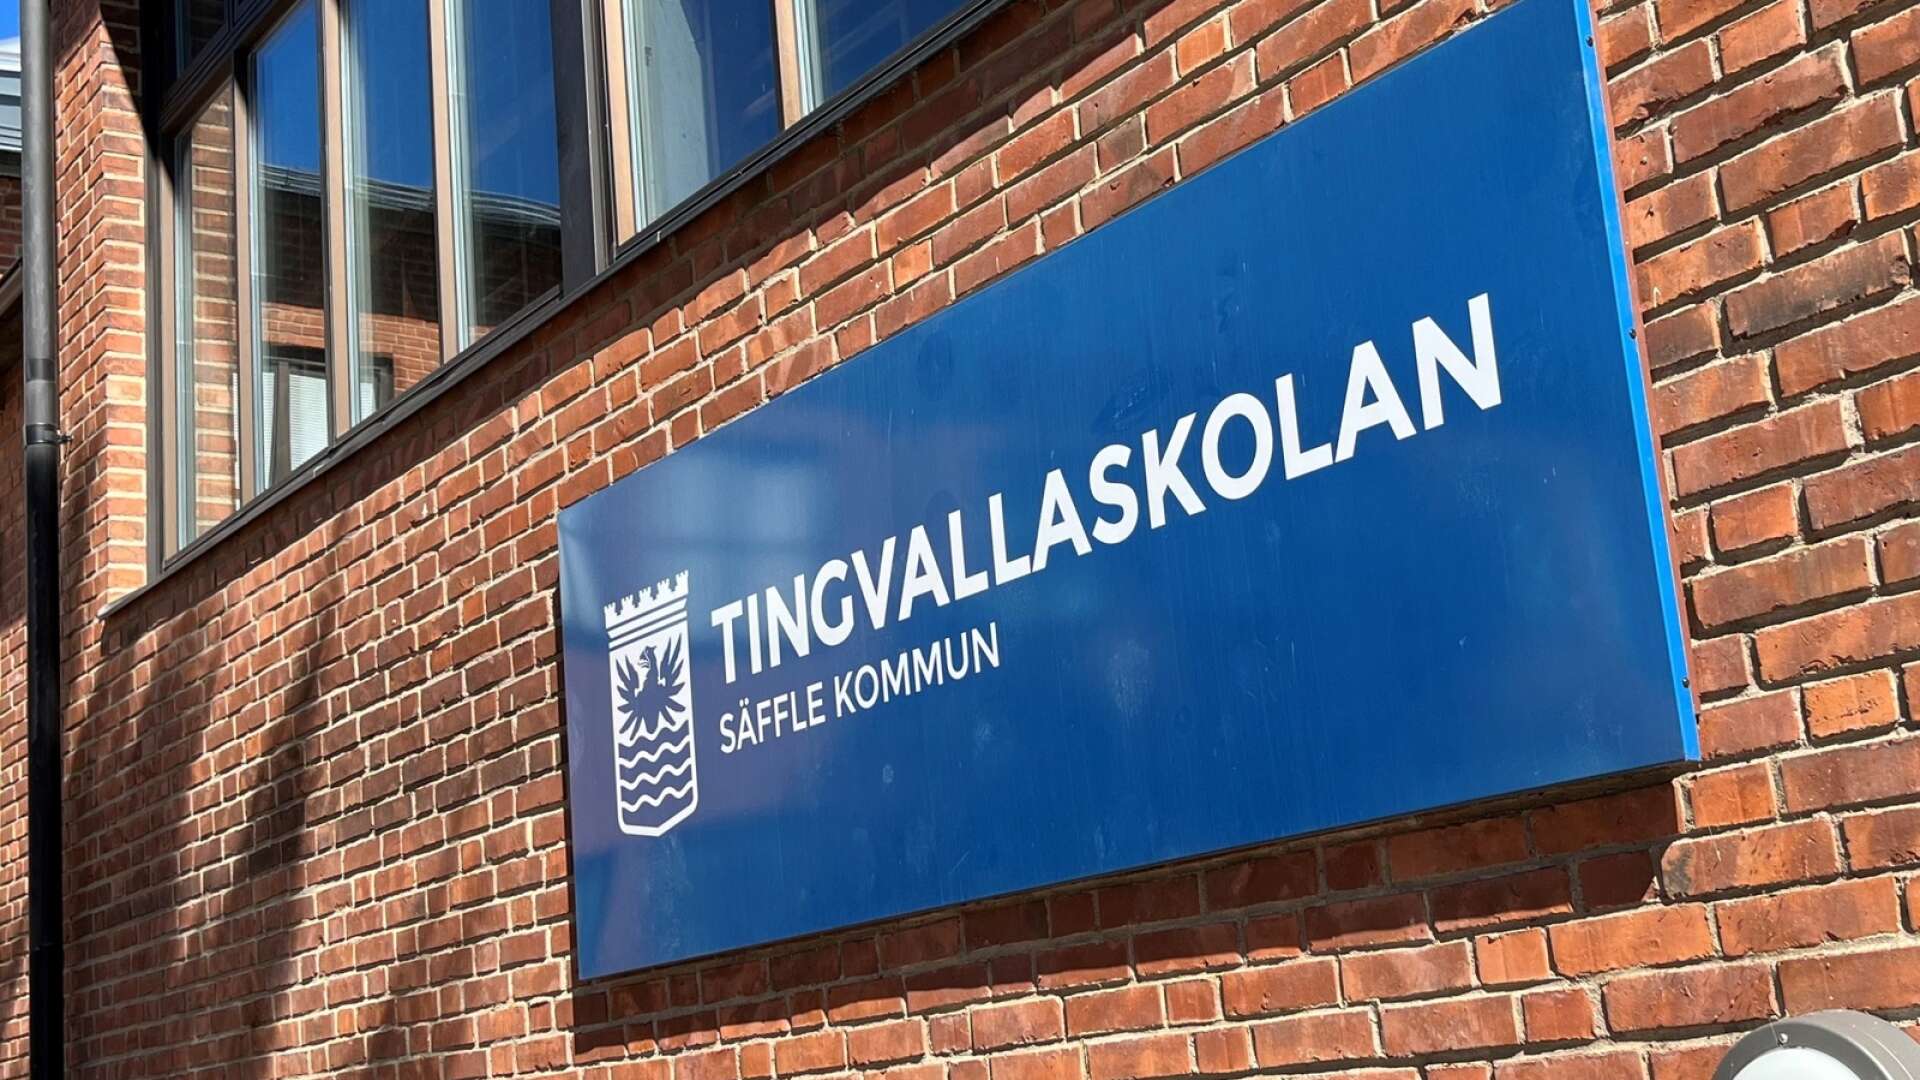 Tingvallaskolans skolgård ska enligt ett politiskt beslut byggas om. Just nu pågår en andra upphandling eftersom det första gången inte kom in några anbud.